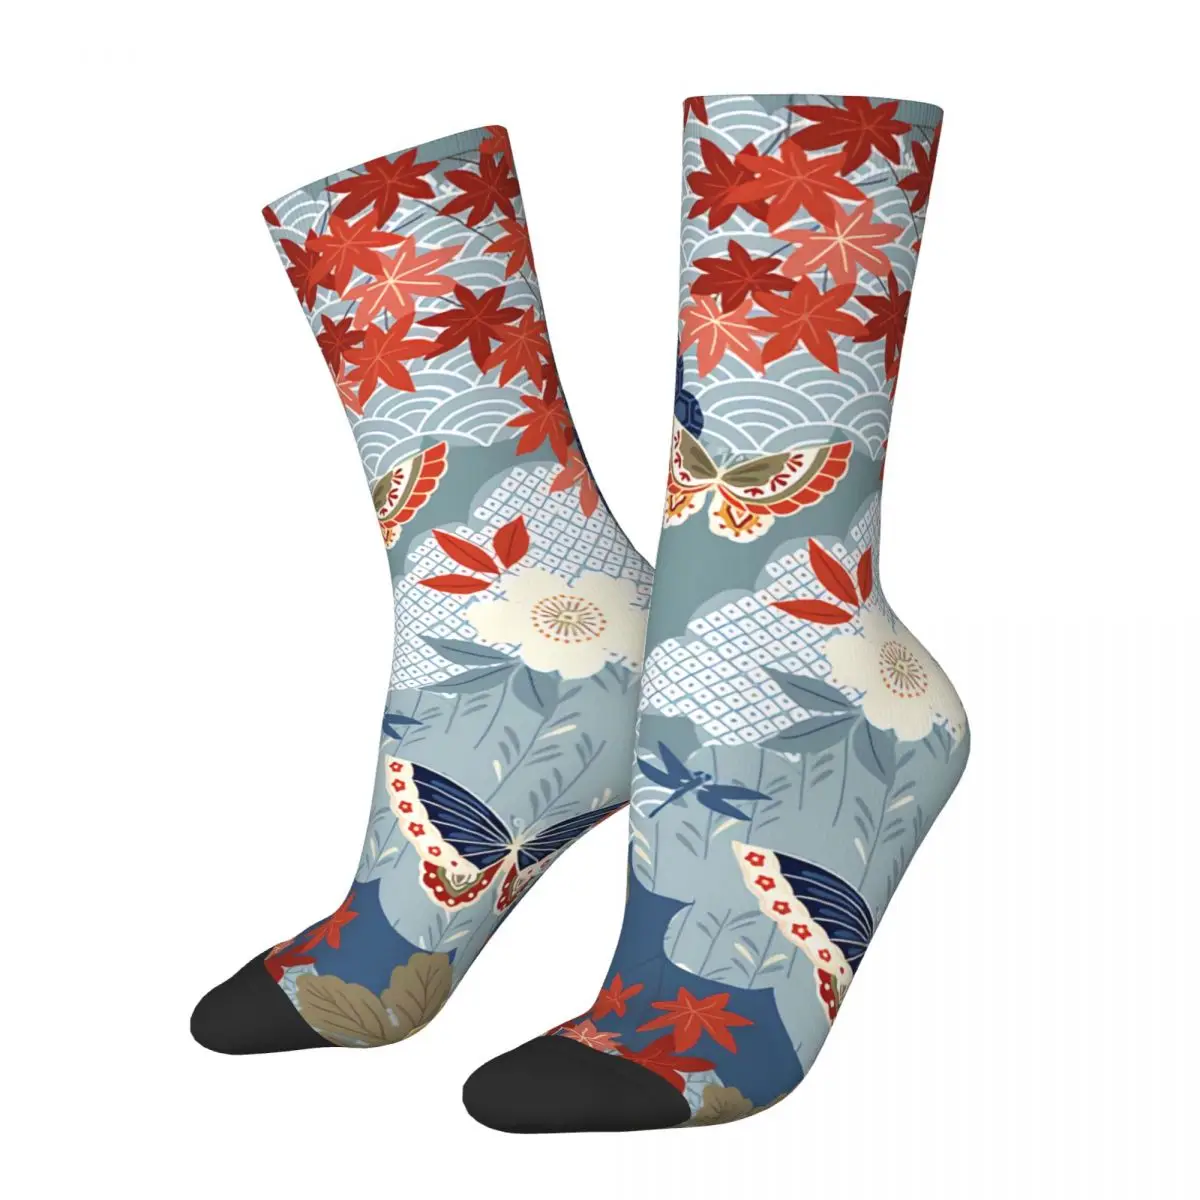 Happy Men's Socks Japan Винтажный Дизайн Винтажные носки в японском стиле в стиле хип-хоп Crazy Crew с подарочным рисунком